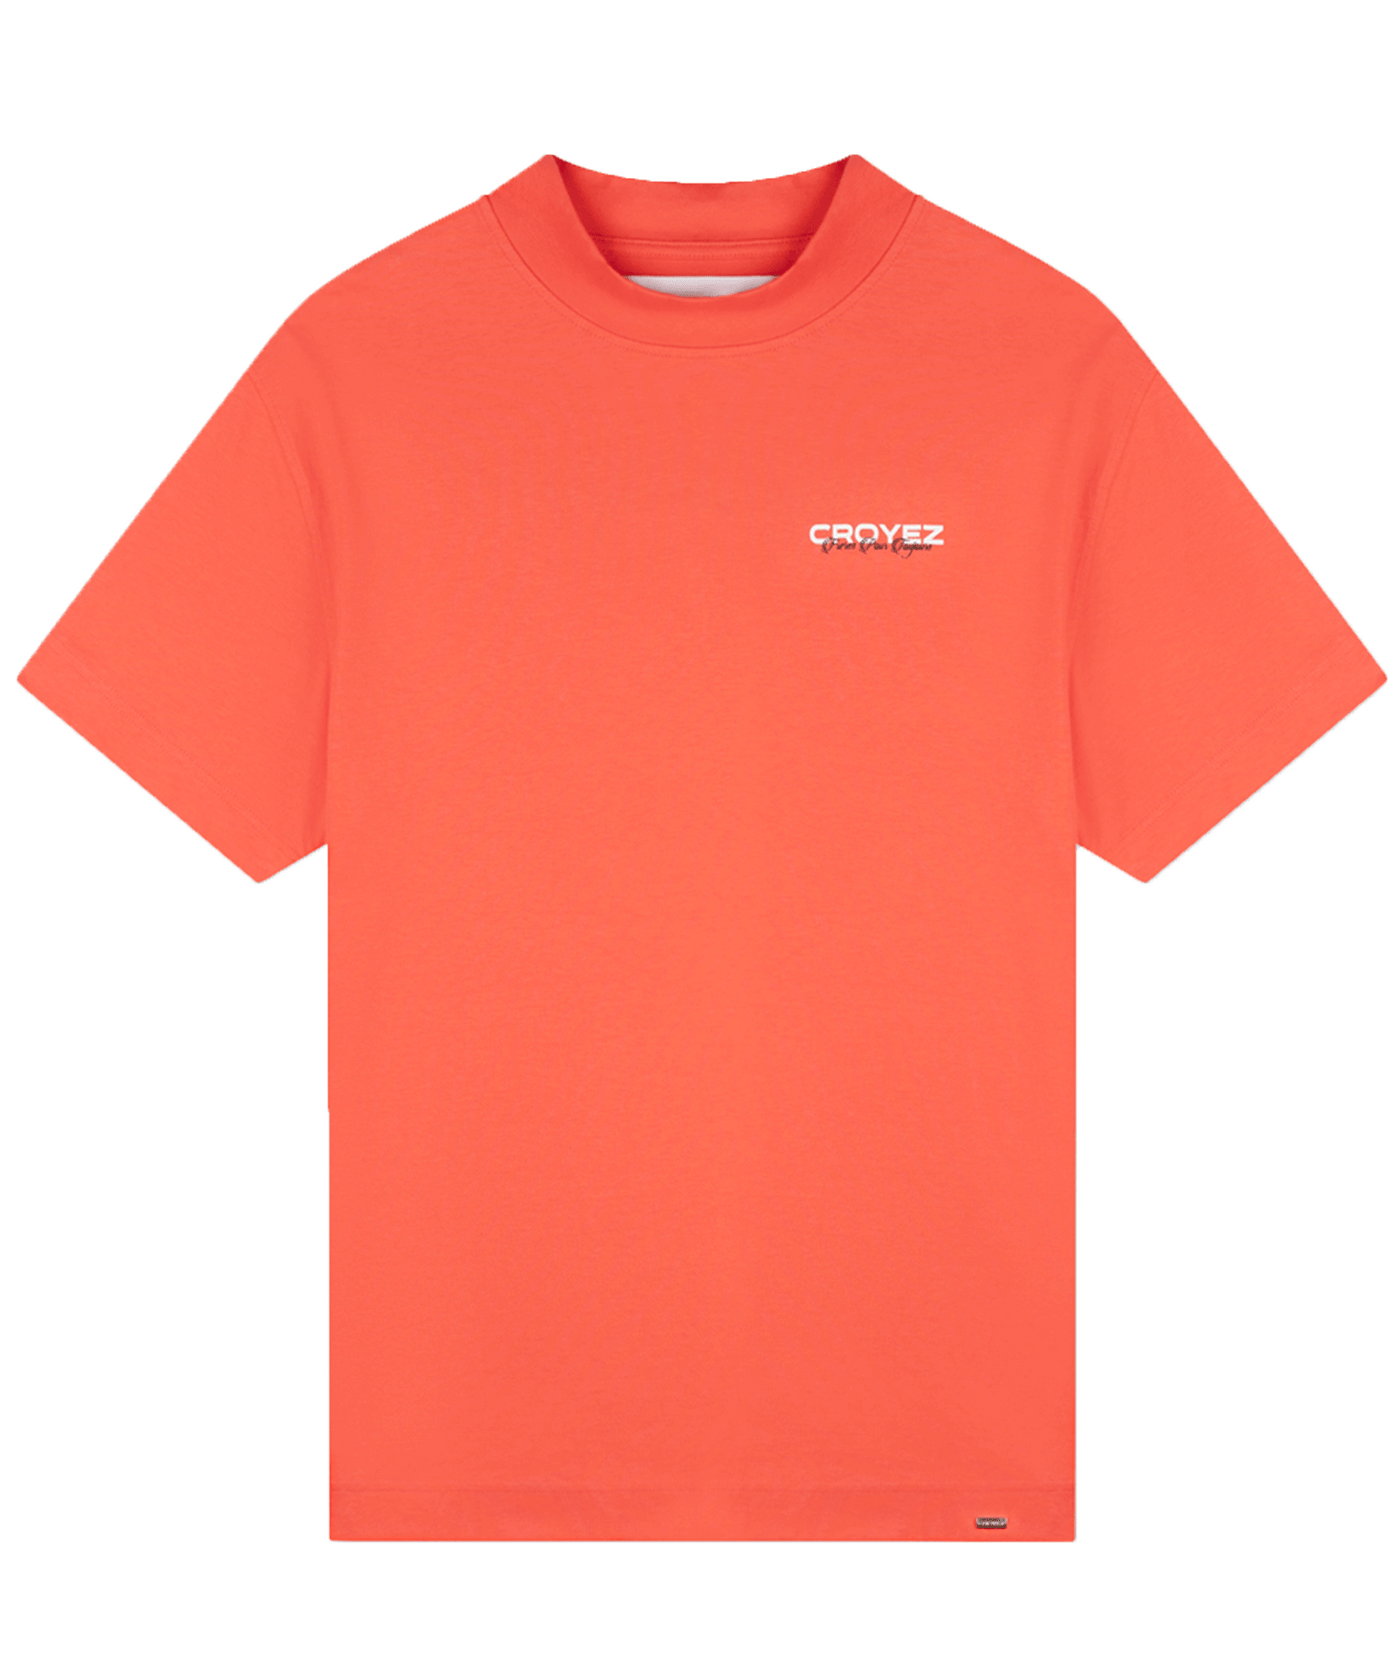 CROYEZ - Freres - T-shirt - Coral/white